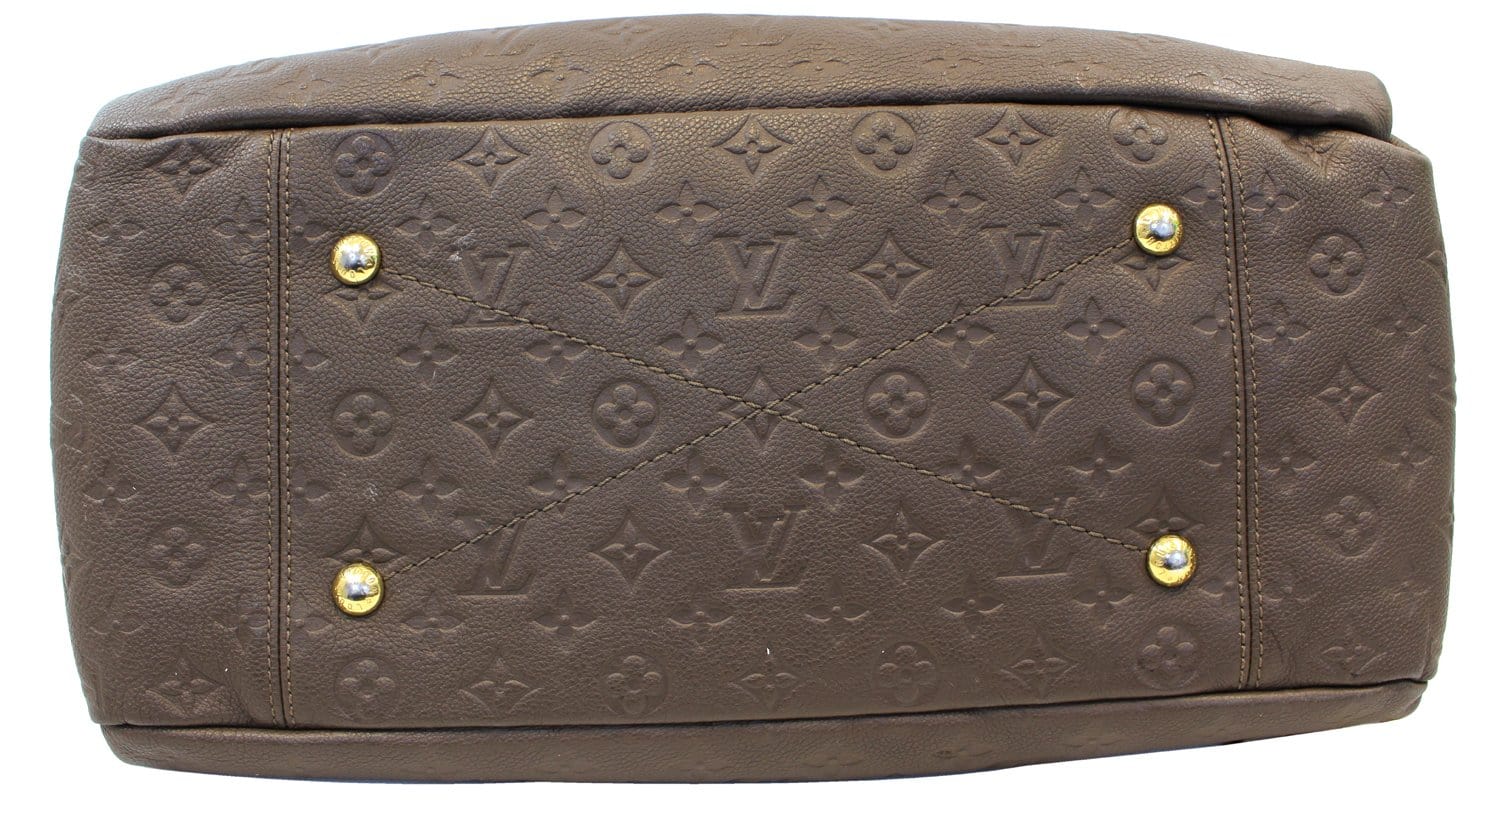 New Louis Vuitton Ombre Beauty Travel Case Bag